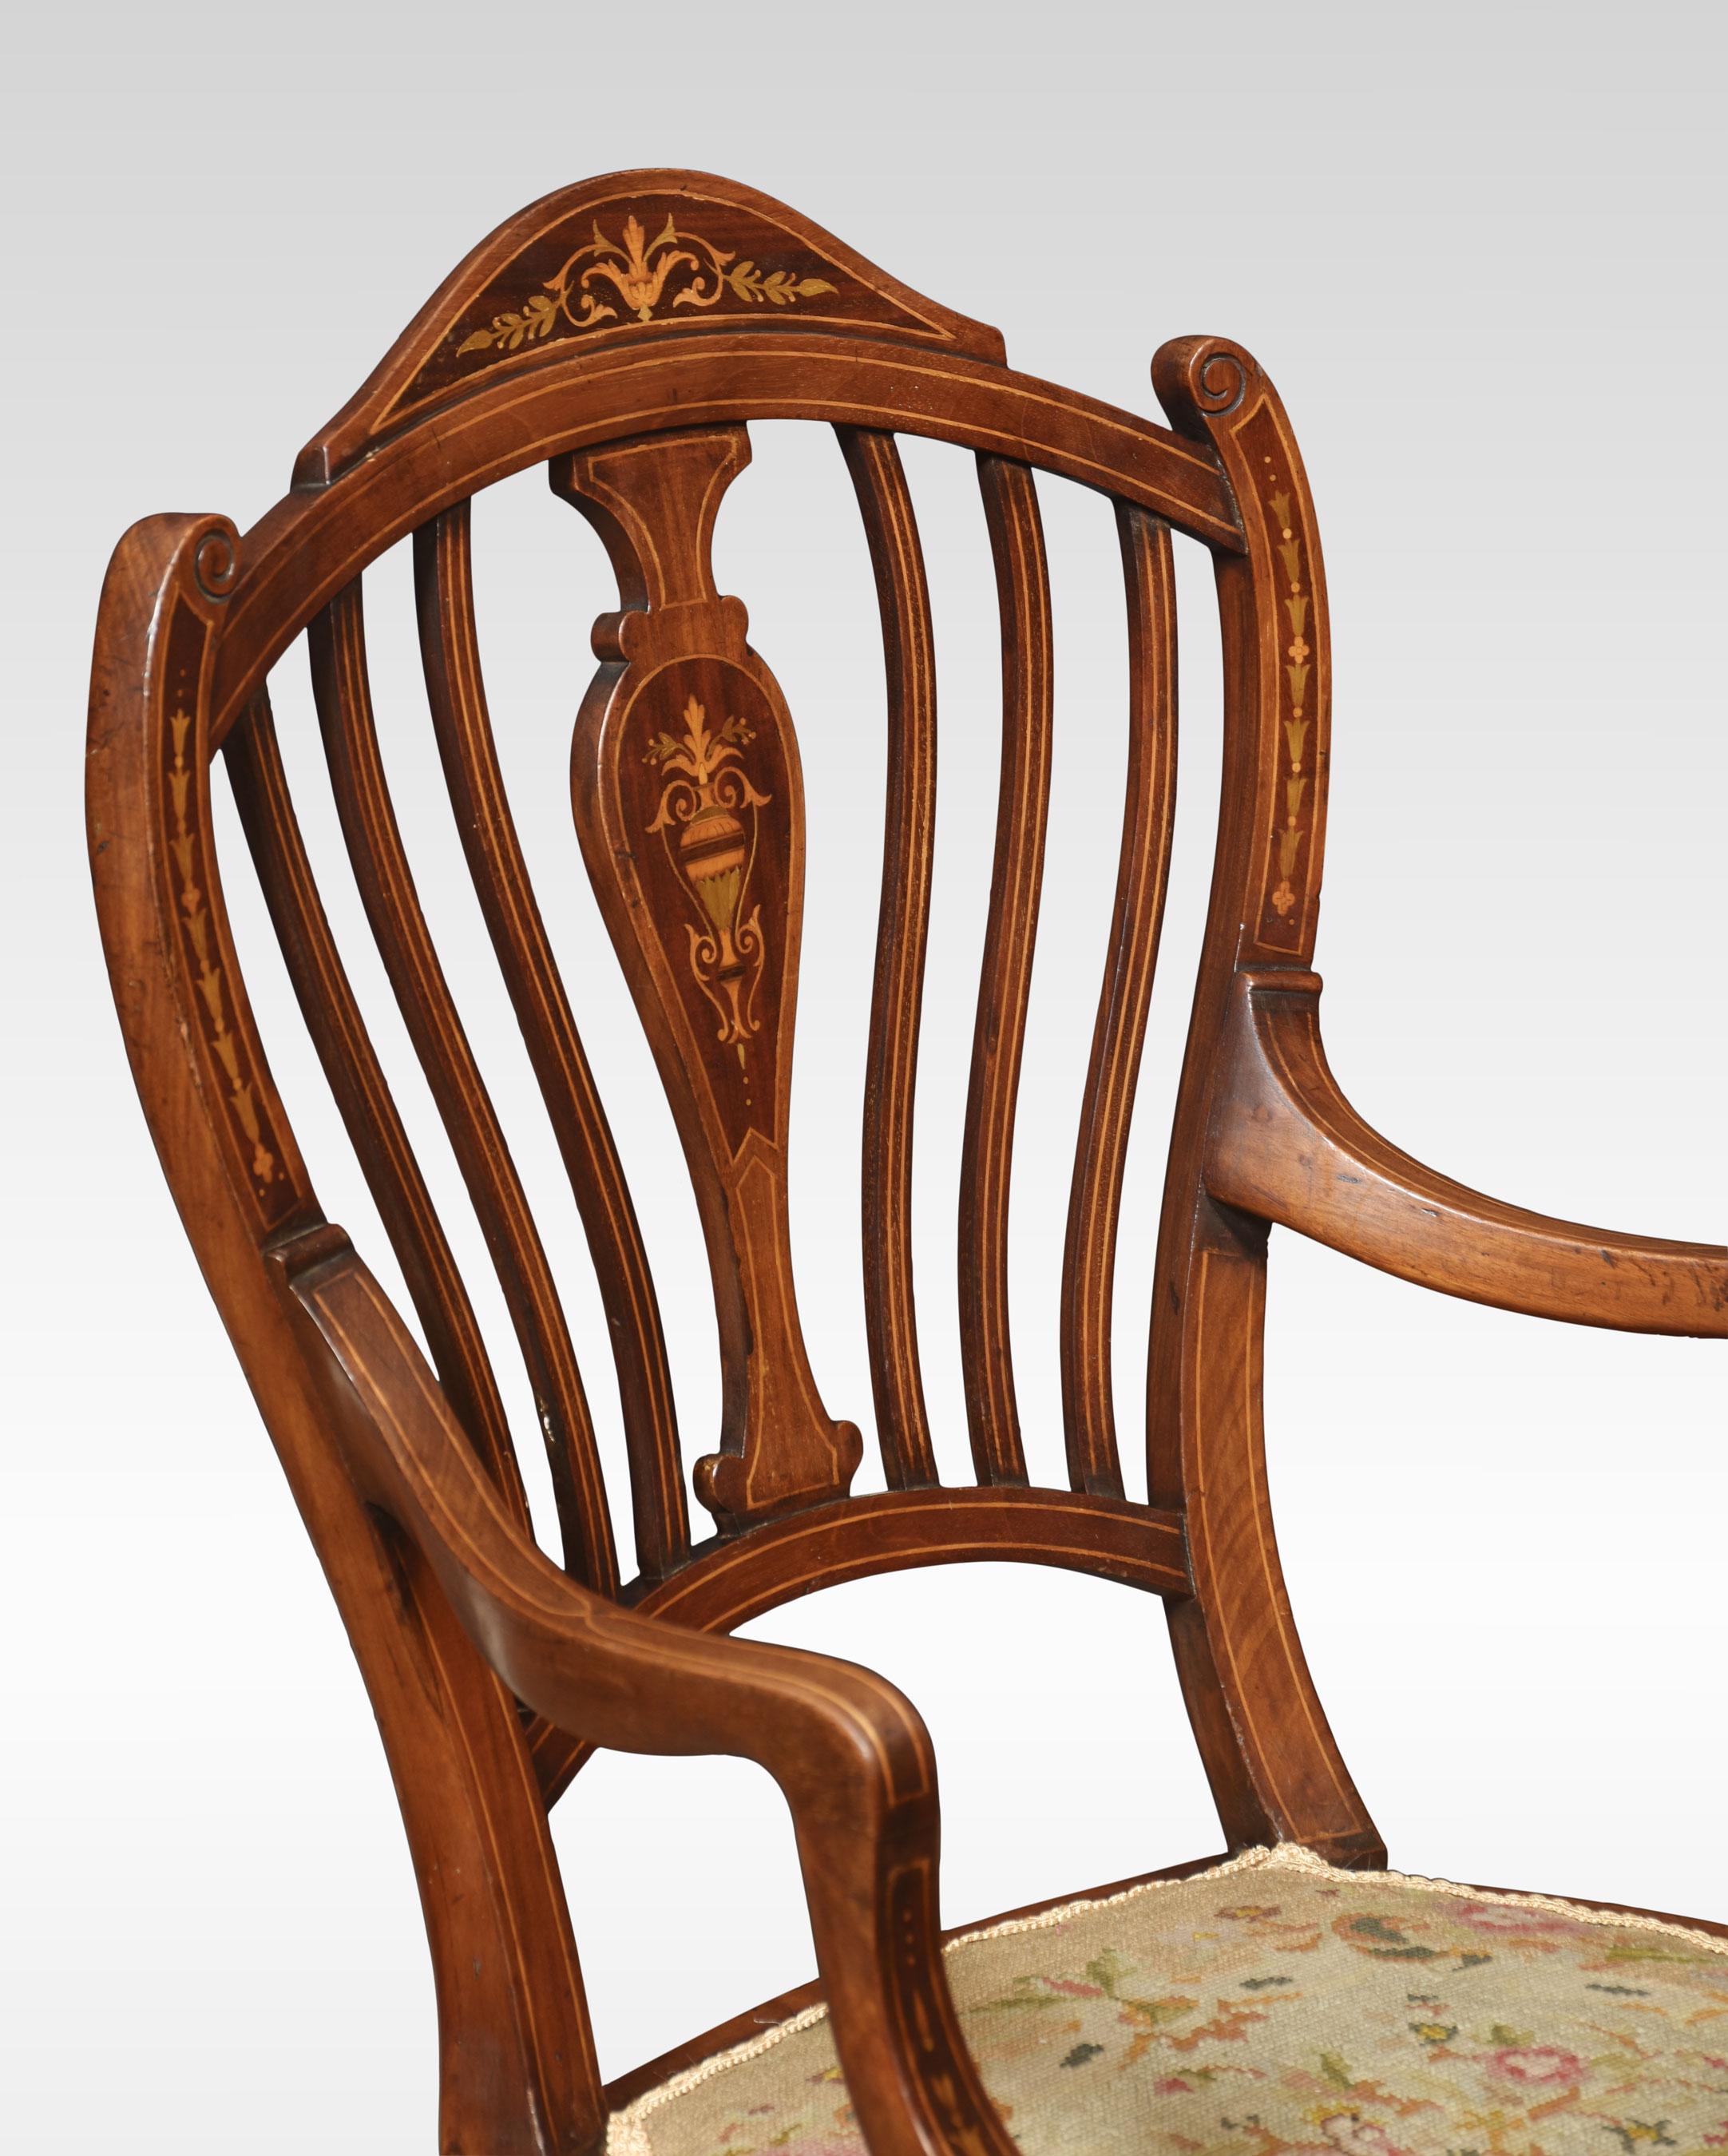 Sessel aus Mahagoni mit Intarsien, mit geformter Rückenlehne mit zentraler Intarsie, auf dem Sitz mit Nadelspitze. Alle stehen auf sich verjüngenden Vorderbeinen, die in Spatenfüßen enden.
Abmessungen
Höhe 37,5 Zoll Höhe zum Sitz 17,5 Zoll
Breite 22